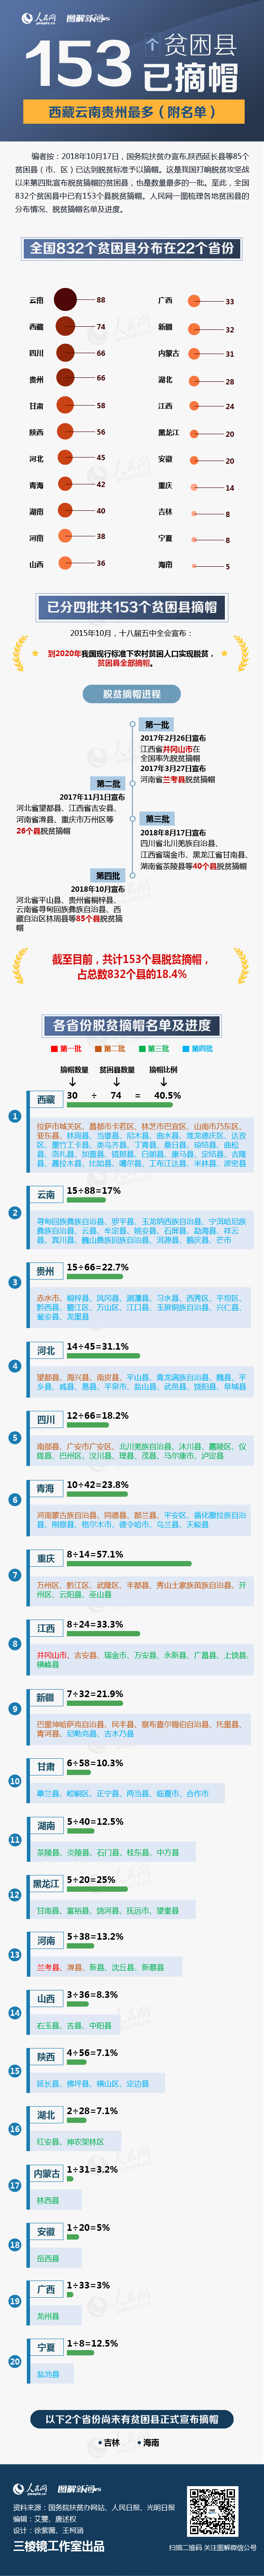 153个贫困县已摘帽 西藏云南贵州最多(名单)